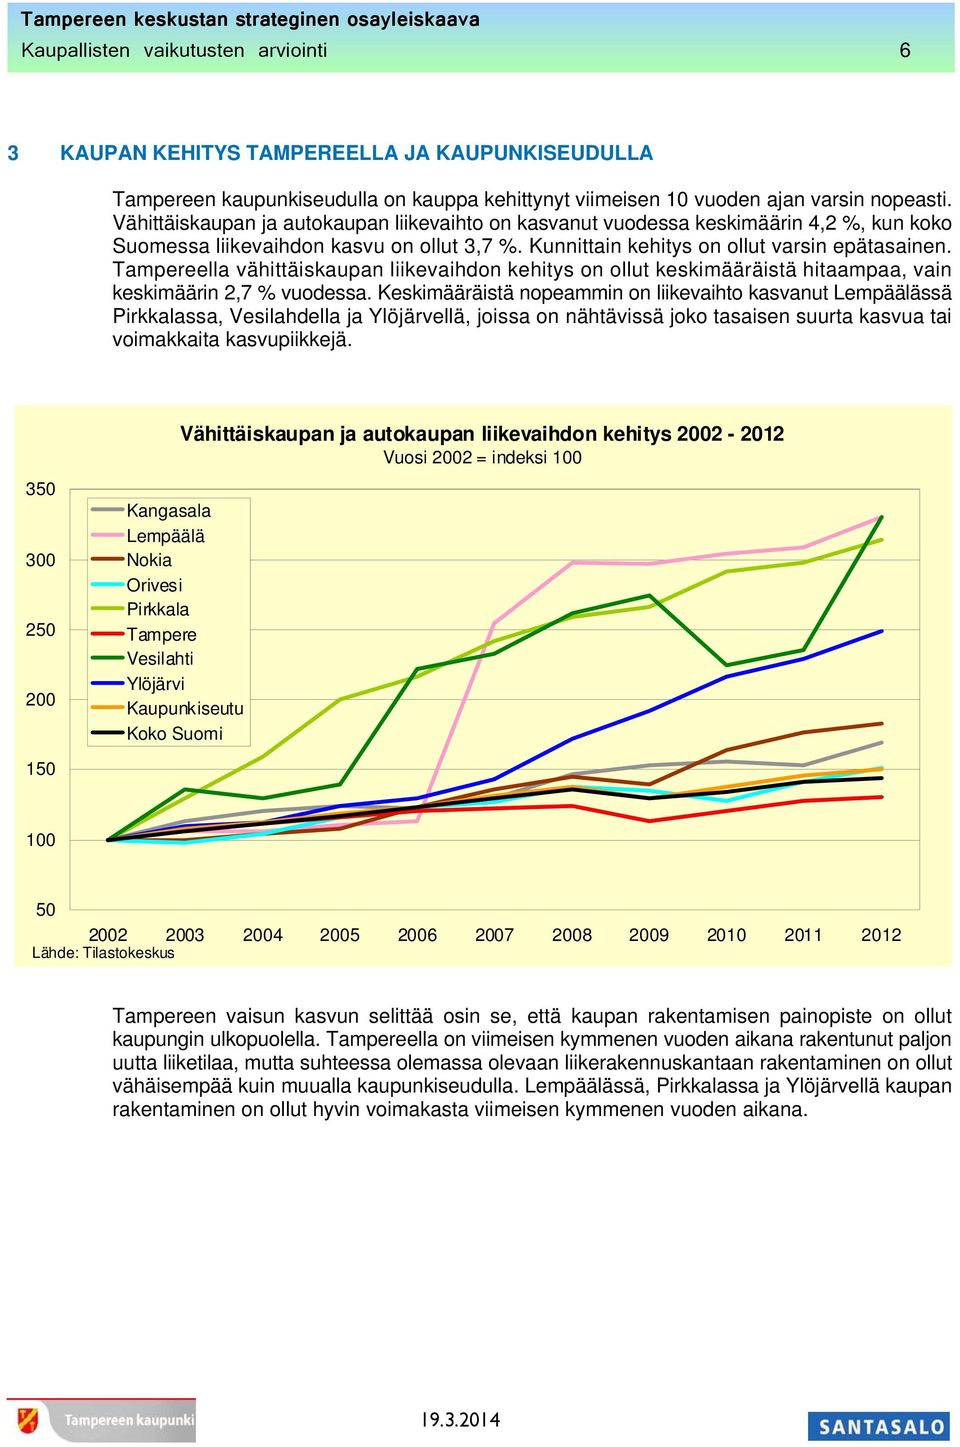 Tampereella vähittäiskaupan liikevaihdon kehitys on ollut keskimääräistä hitaampaa, vain keskimäärin 2,7 % vuodessa.